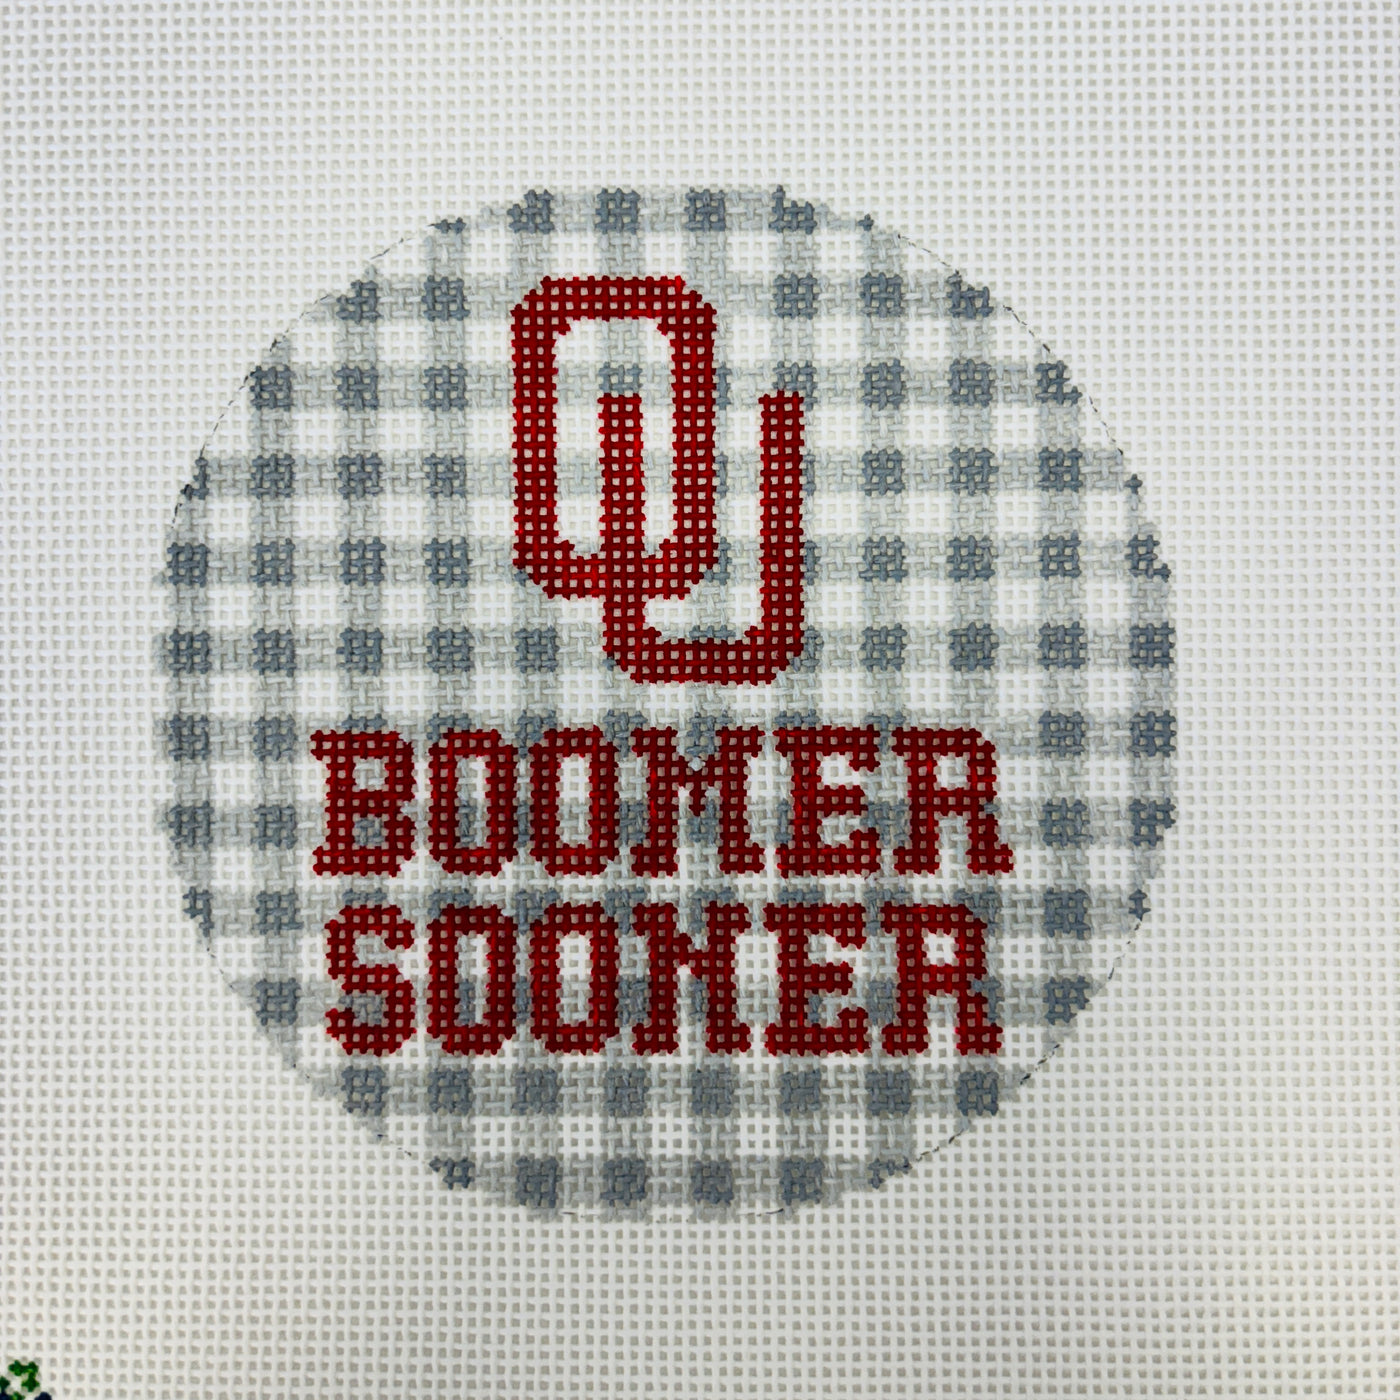 Oklahoma Univeristy (OU) Boomer Sooner Round Needlepoint Canvas